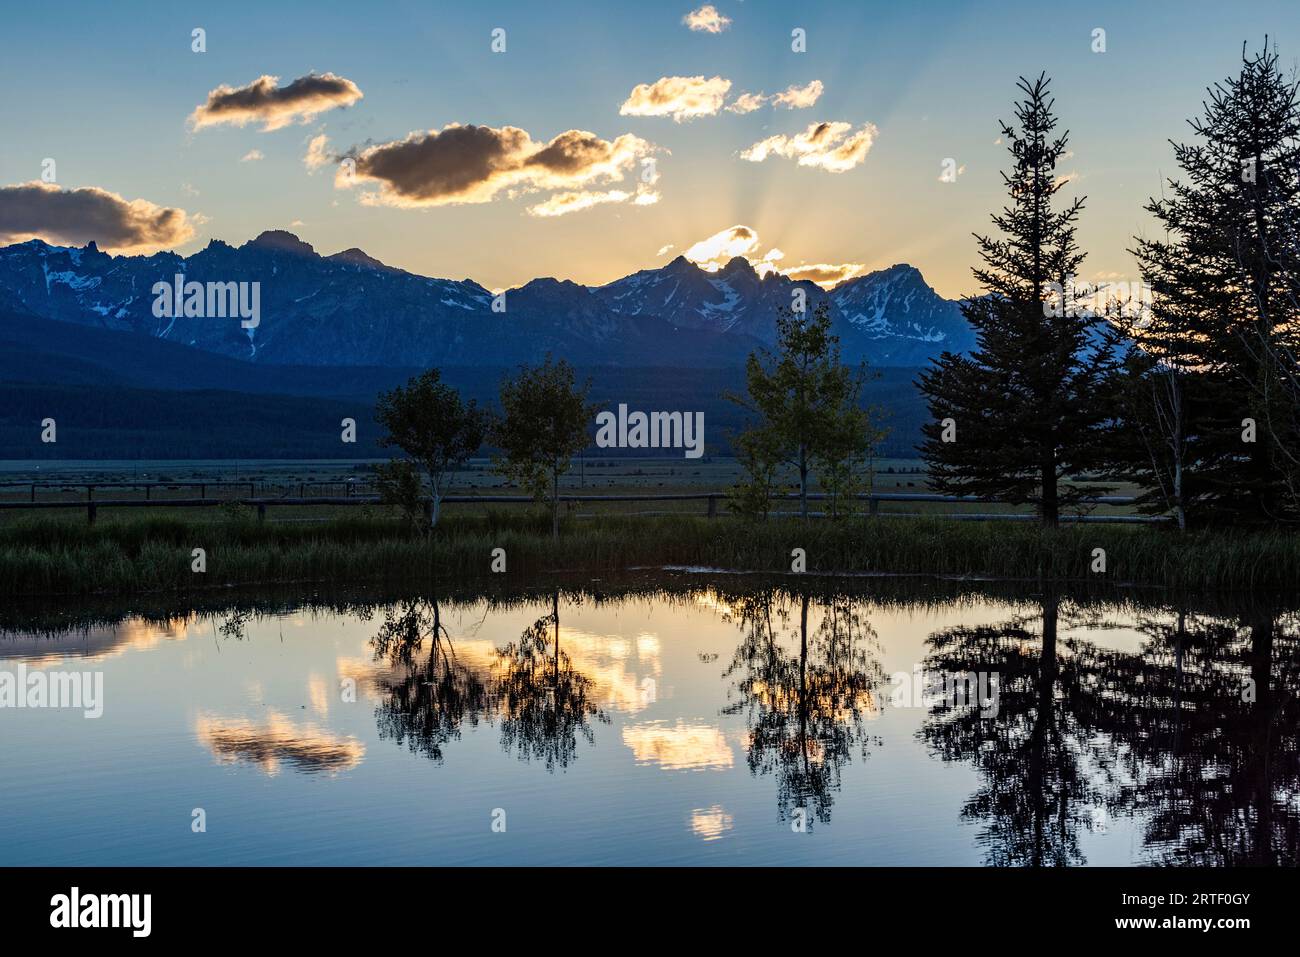 États-Unis, Idaho, Stanley, vue panoramique sur les montagnes Sawtooth avec étang au coucher du soleil Banque D'Images